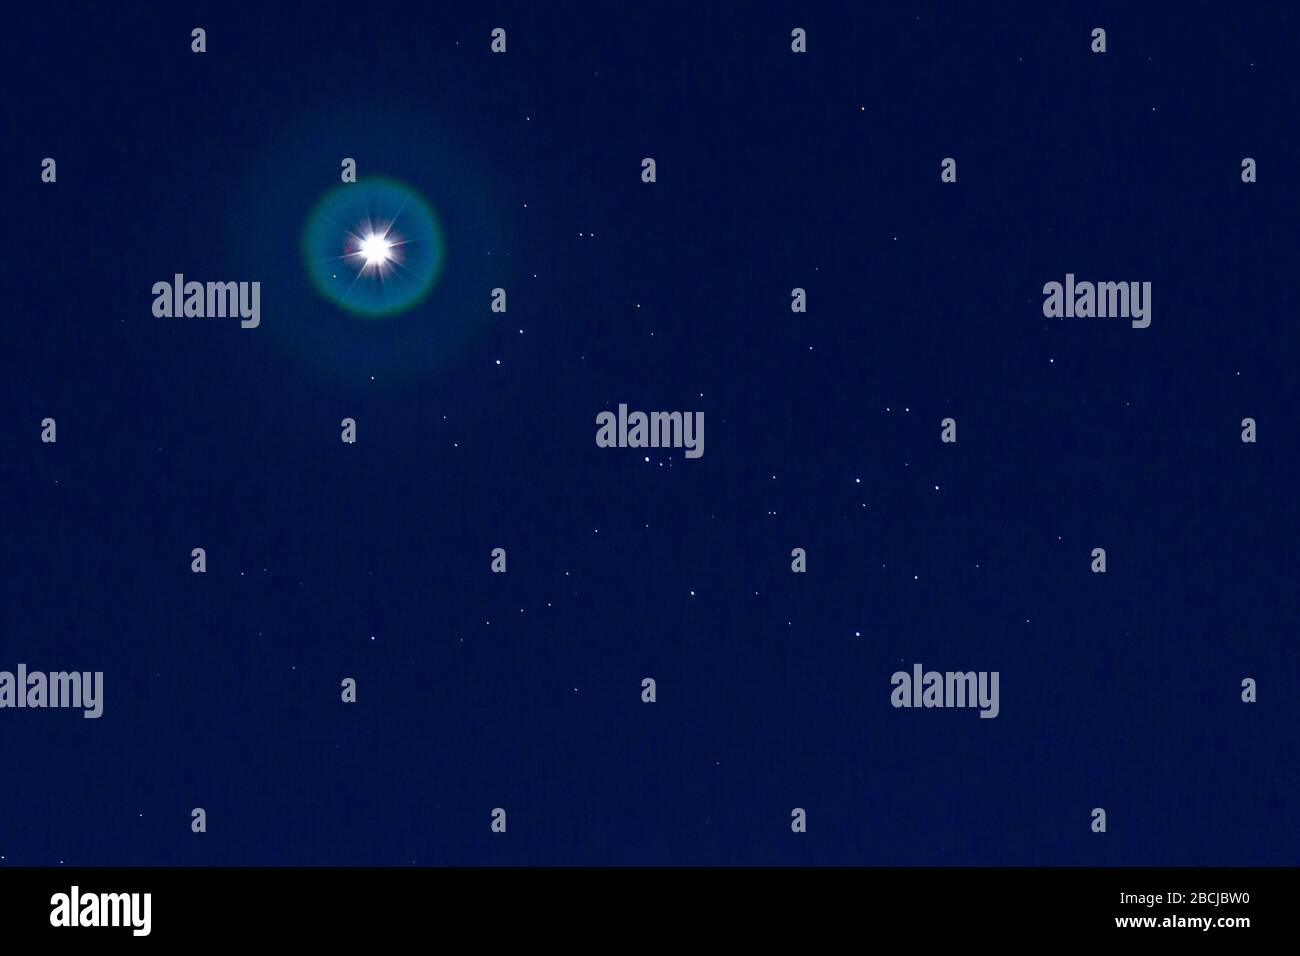 Birmingham, Großbritannien. April 2020. Der Planet Venus erscheint spektakulär, da er "Photobomben", den Sternhaufen, der als Plejaden oder die sieben Schwestern bekannt ist, vor den Sternen am frühen Abendhimmel vorbeizieht. Die Venus, manchmal auch Abendstern genannt, schillert derzeit in der Stärke -4,5 - fast so hell, wie sie es möglicherweise bekommen kann. Für viele Astronomen ist dies ein besonderes Ereignis. Kredit: Peter Lopeman/Alamy Live News Stockfoto